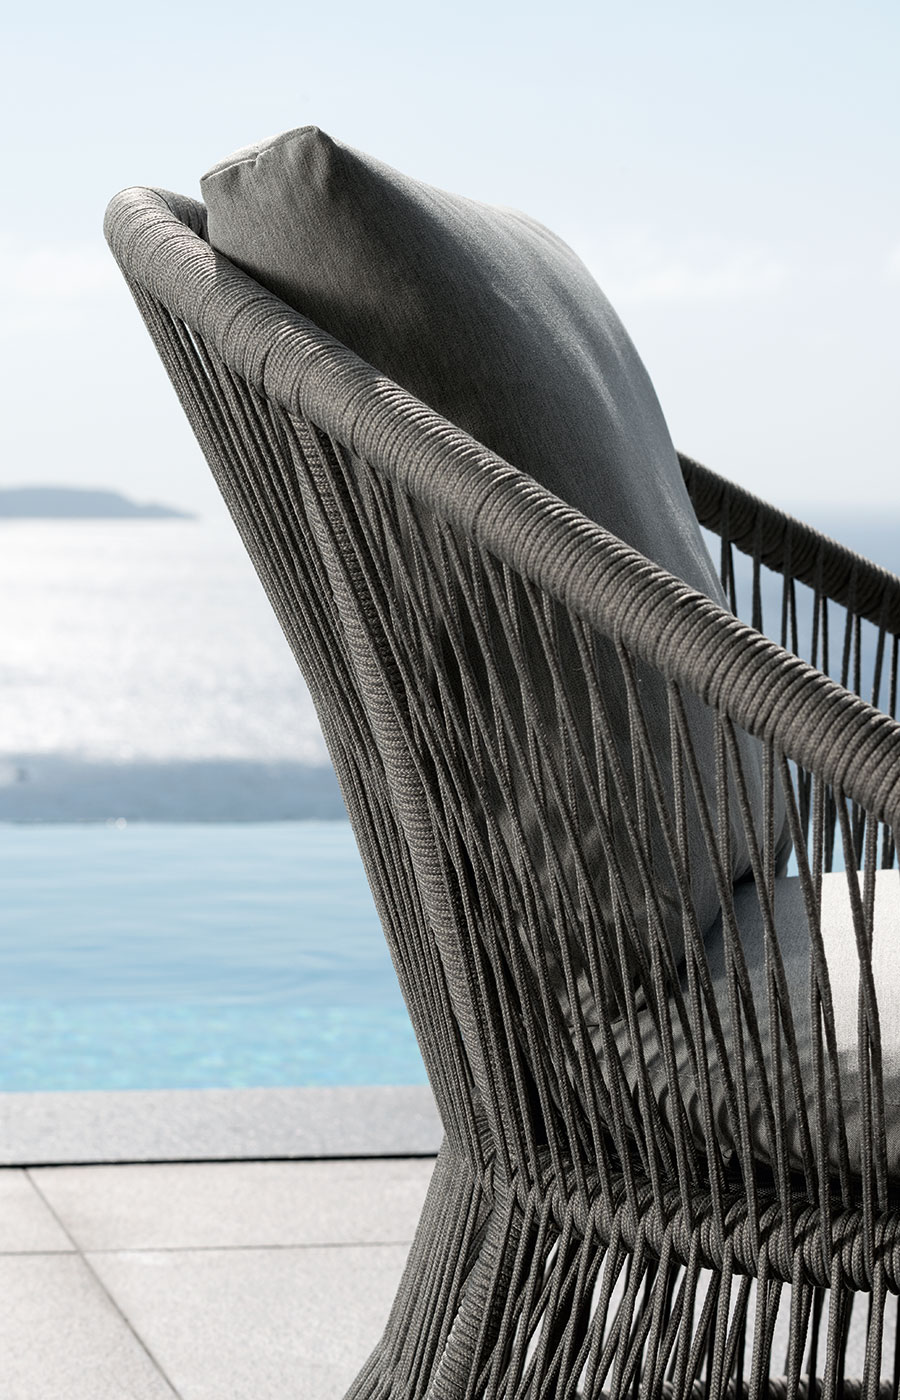 Meubles d'extérieur de haute qualité. Salon outdoor pour villas, hotels, yachts, restaurants. Le fauteuil de jardin Rope a une structure en aluminium.